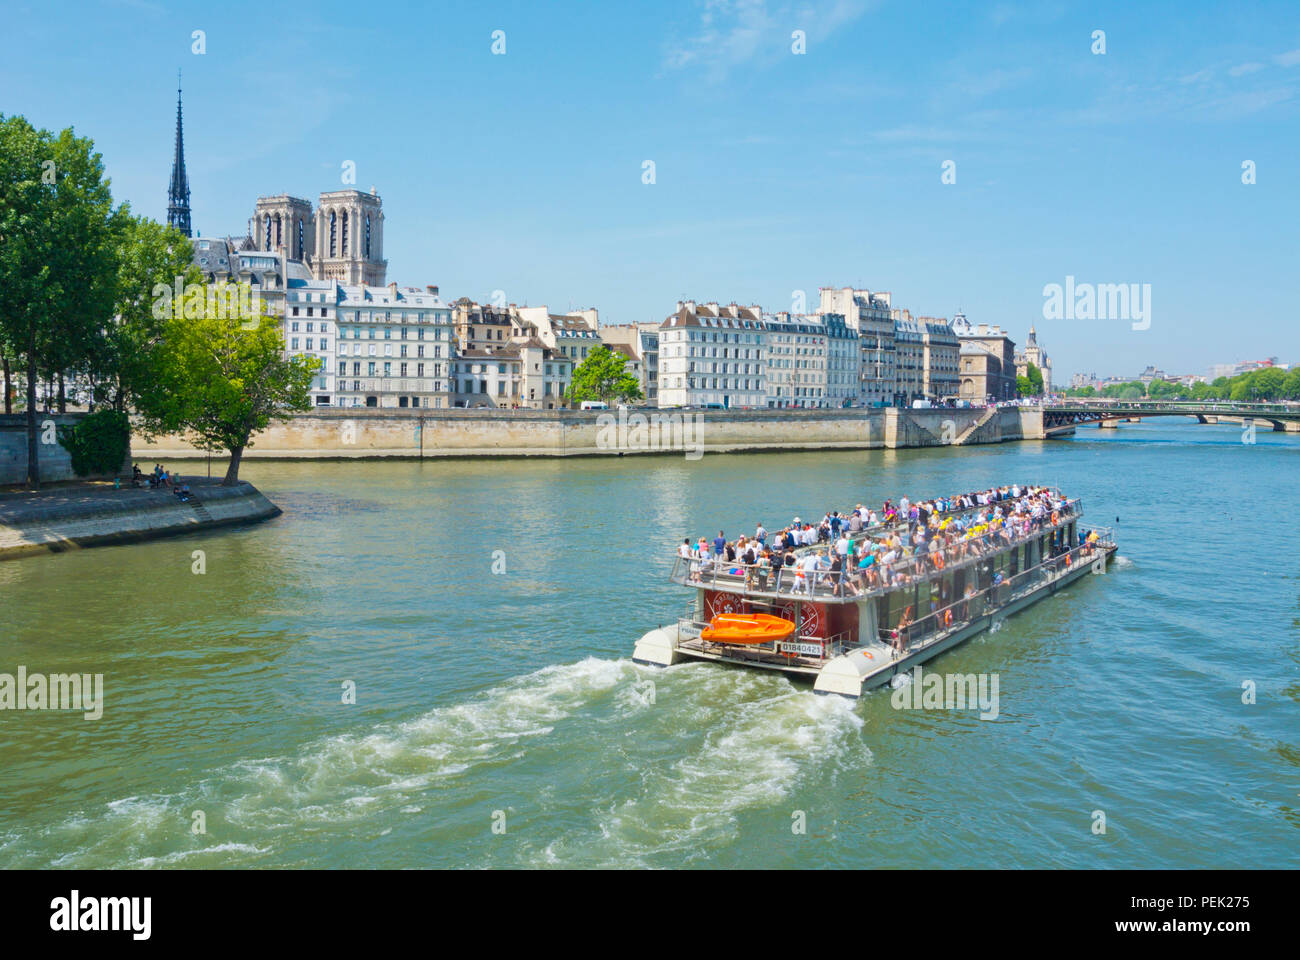 Bateaux Parisiens sightseeing tour boat, in front of Ile de la Cite and Notre Dame, Paris, France Stock Photo